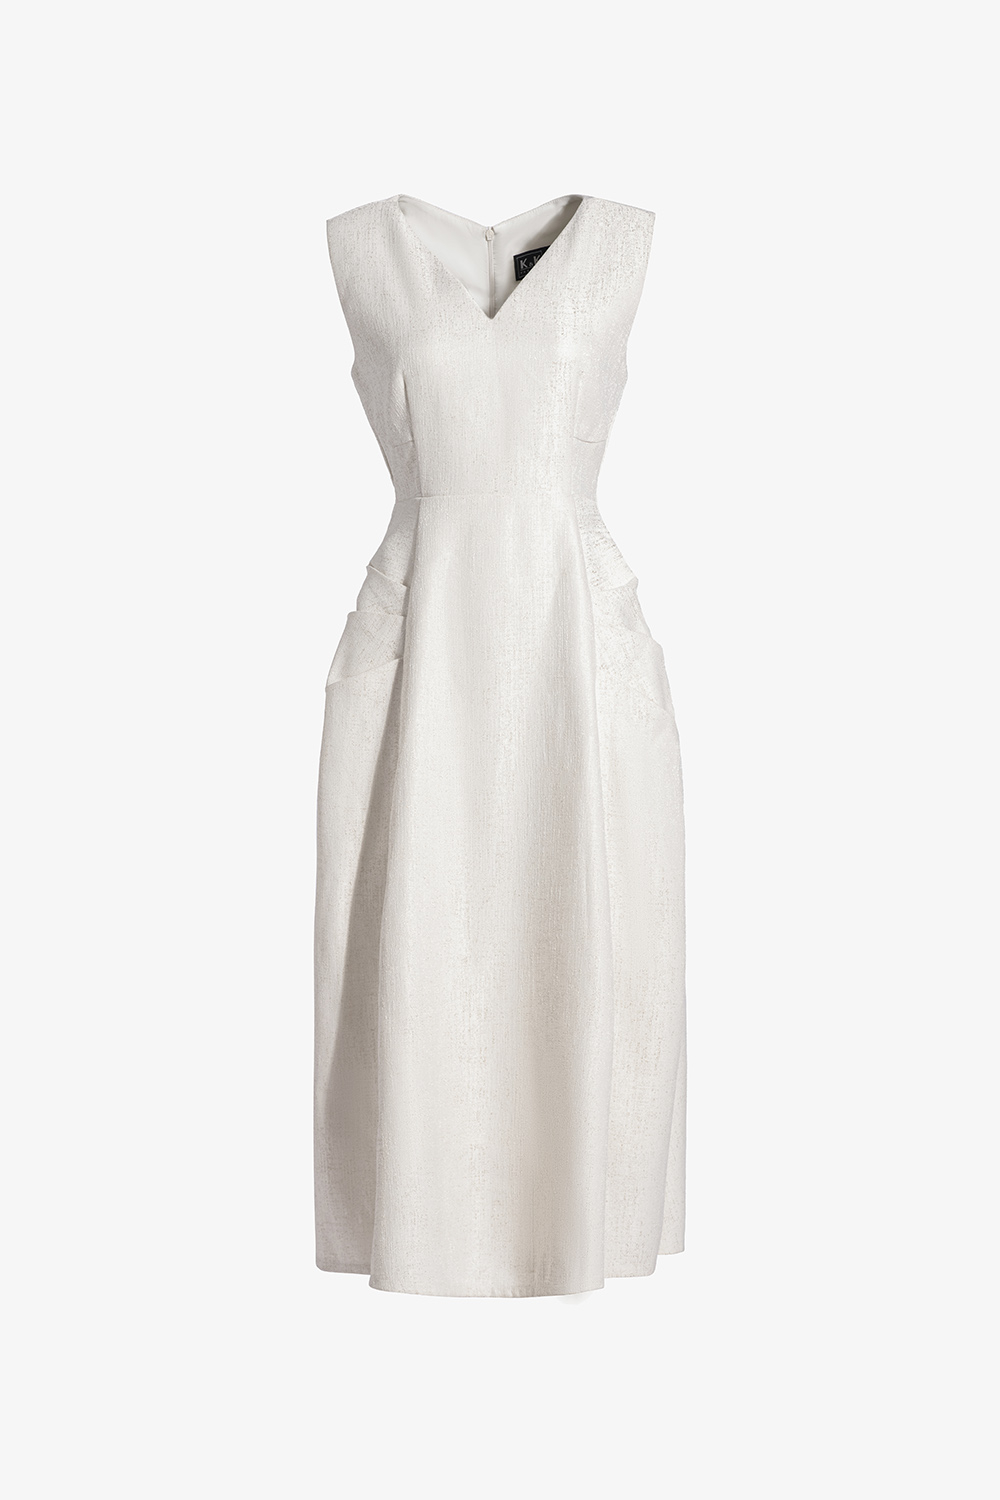 Đầm xòe sát nách eo cut-out HL21-21 | Thời trang công sở K&K Fashion